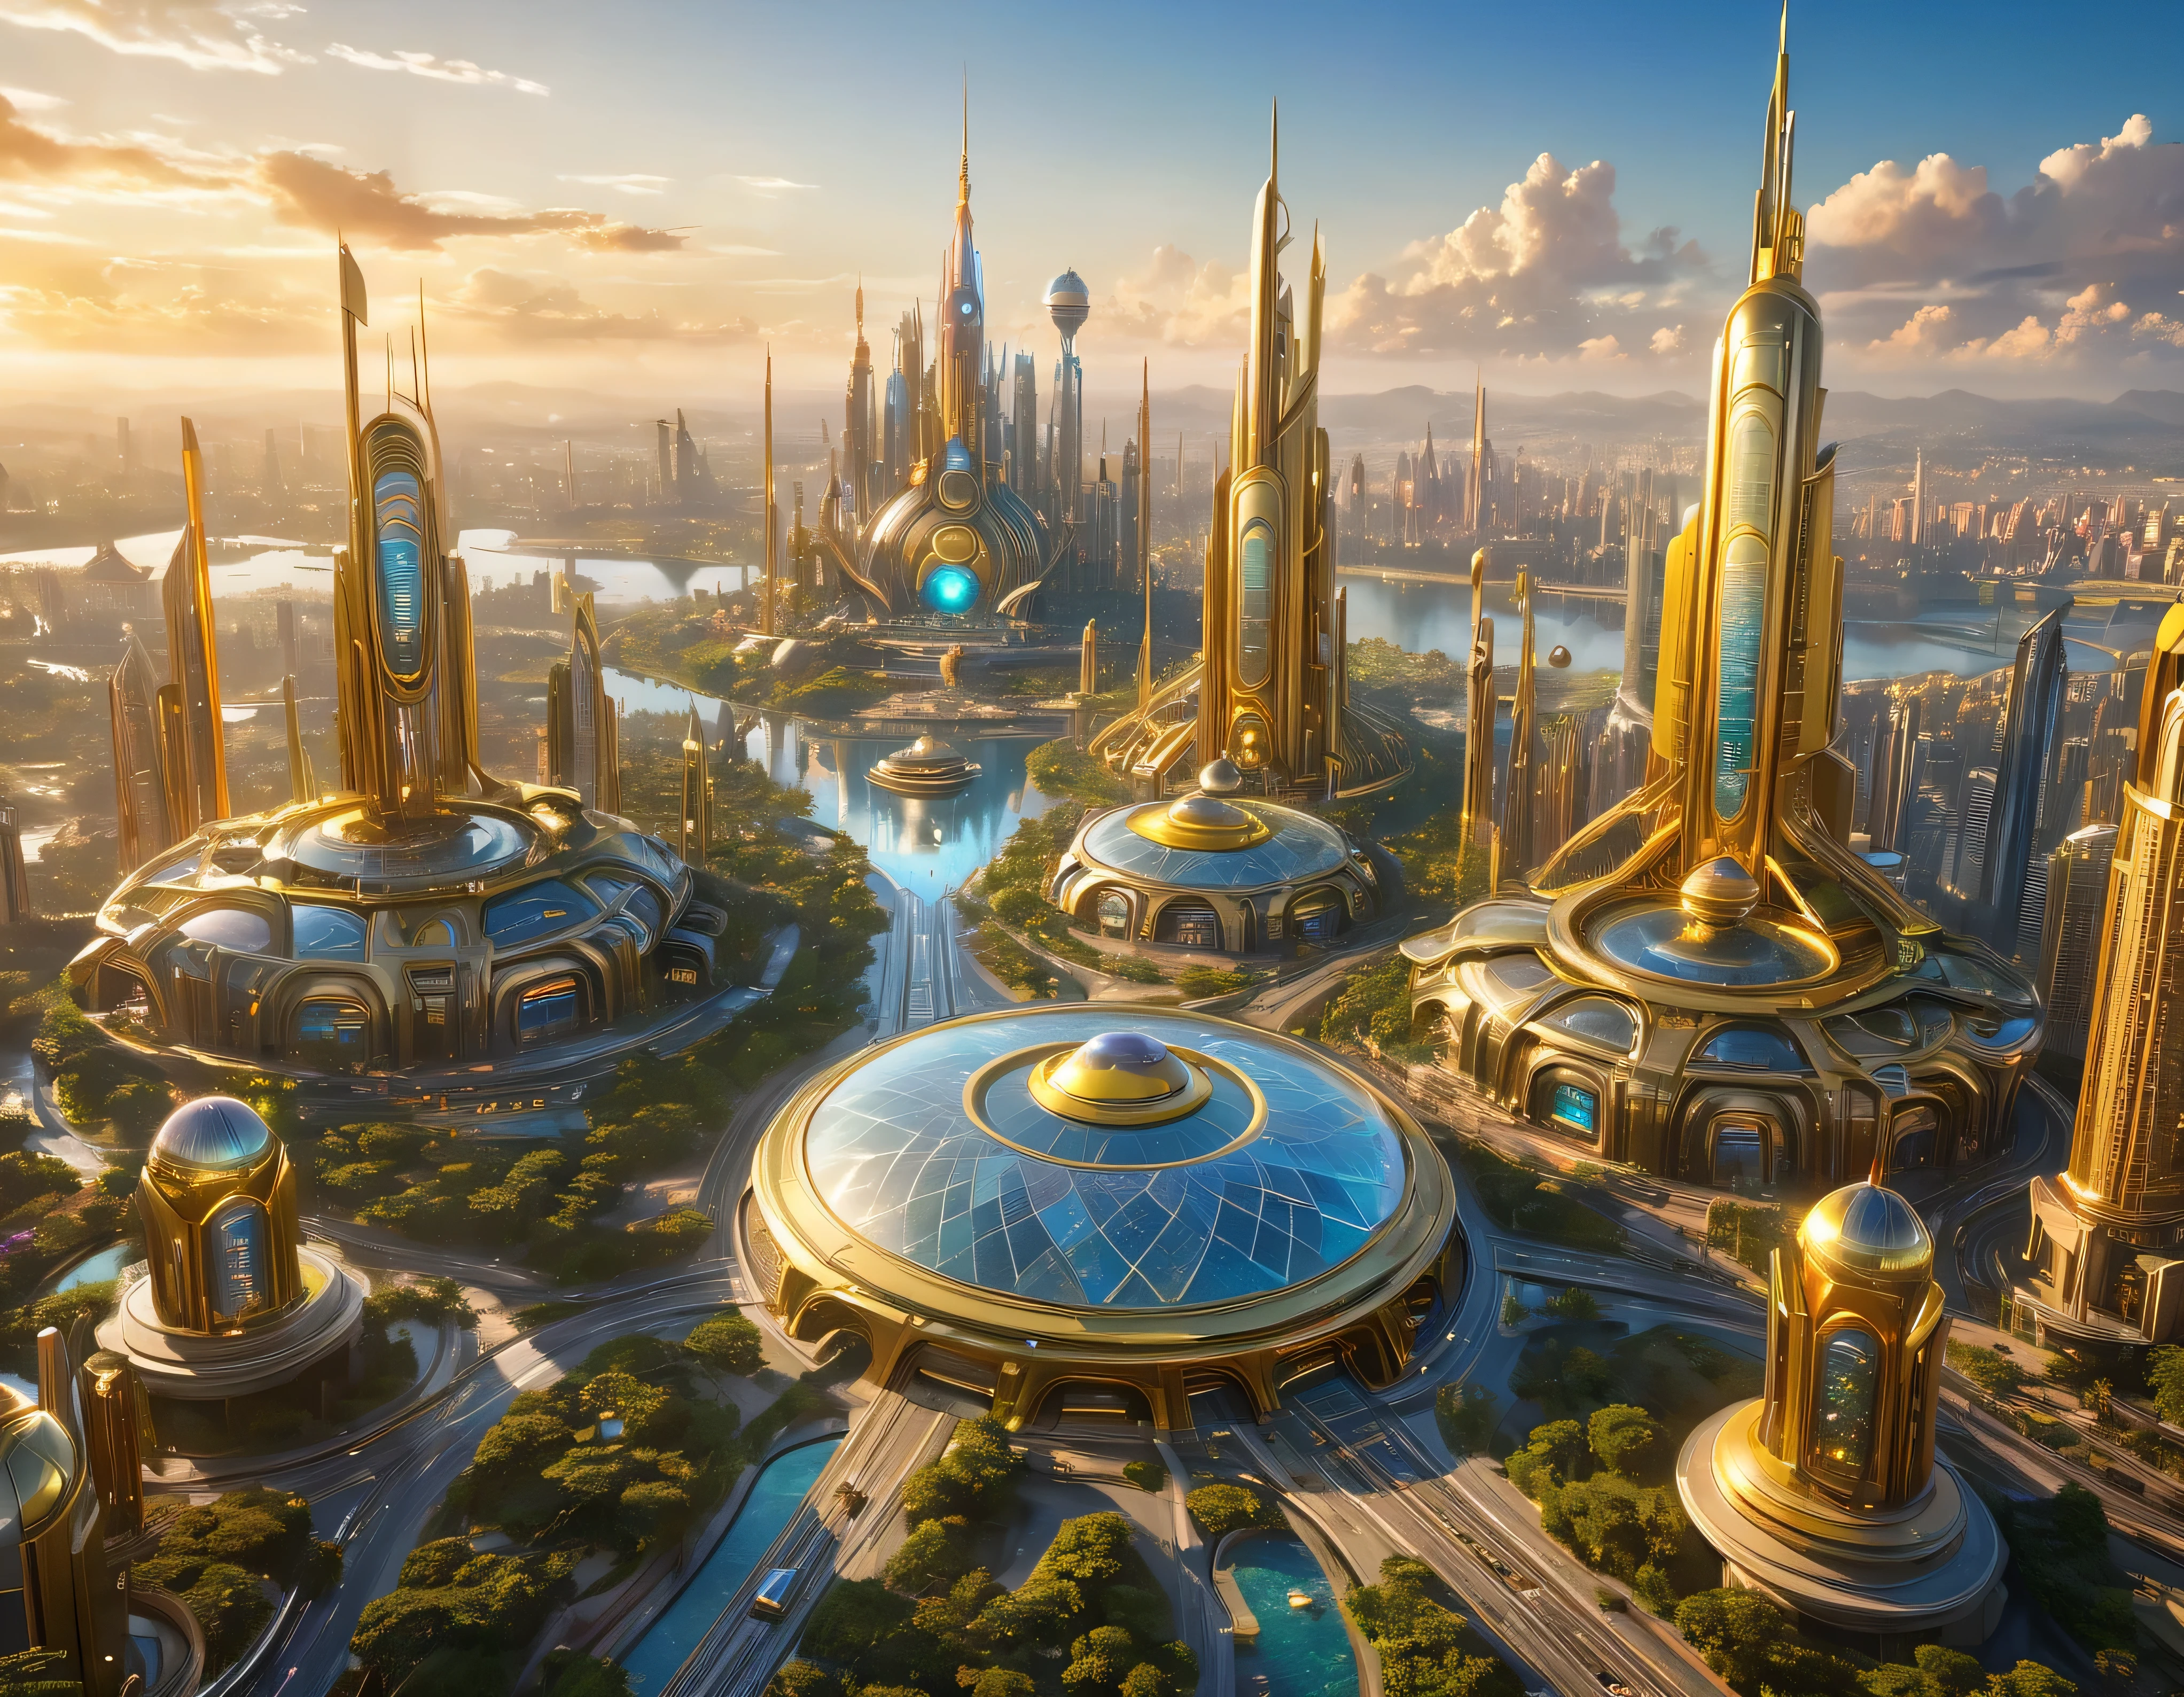 (黃金時段燈光), 特大城市, 科幻小說想像世界的大都市 , 類似未來主義的迪士尼樂園, 和最大的幻想, 巨大的建築物以及橢圓形和十二面體的摩天大樓由金屬和玻璃組合在一起，其中金色和彩色的照明廣告占主導地位。. 清晰的 8k 影像, (機器的複雜細節), 與許多建築物在一起.(頂級品質傑作).(逼真的影像), 直至背景的絕對清晰度